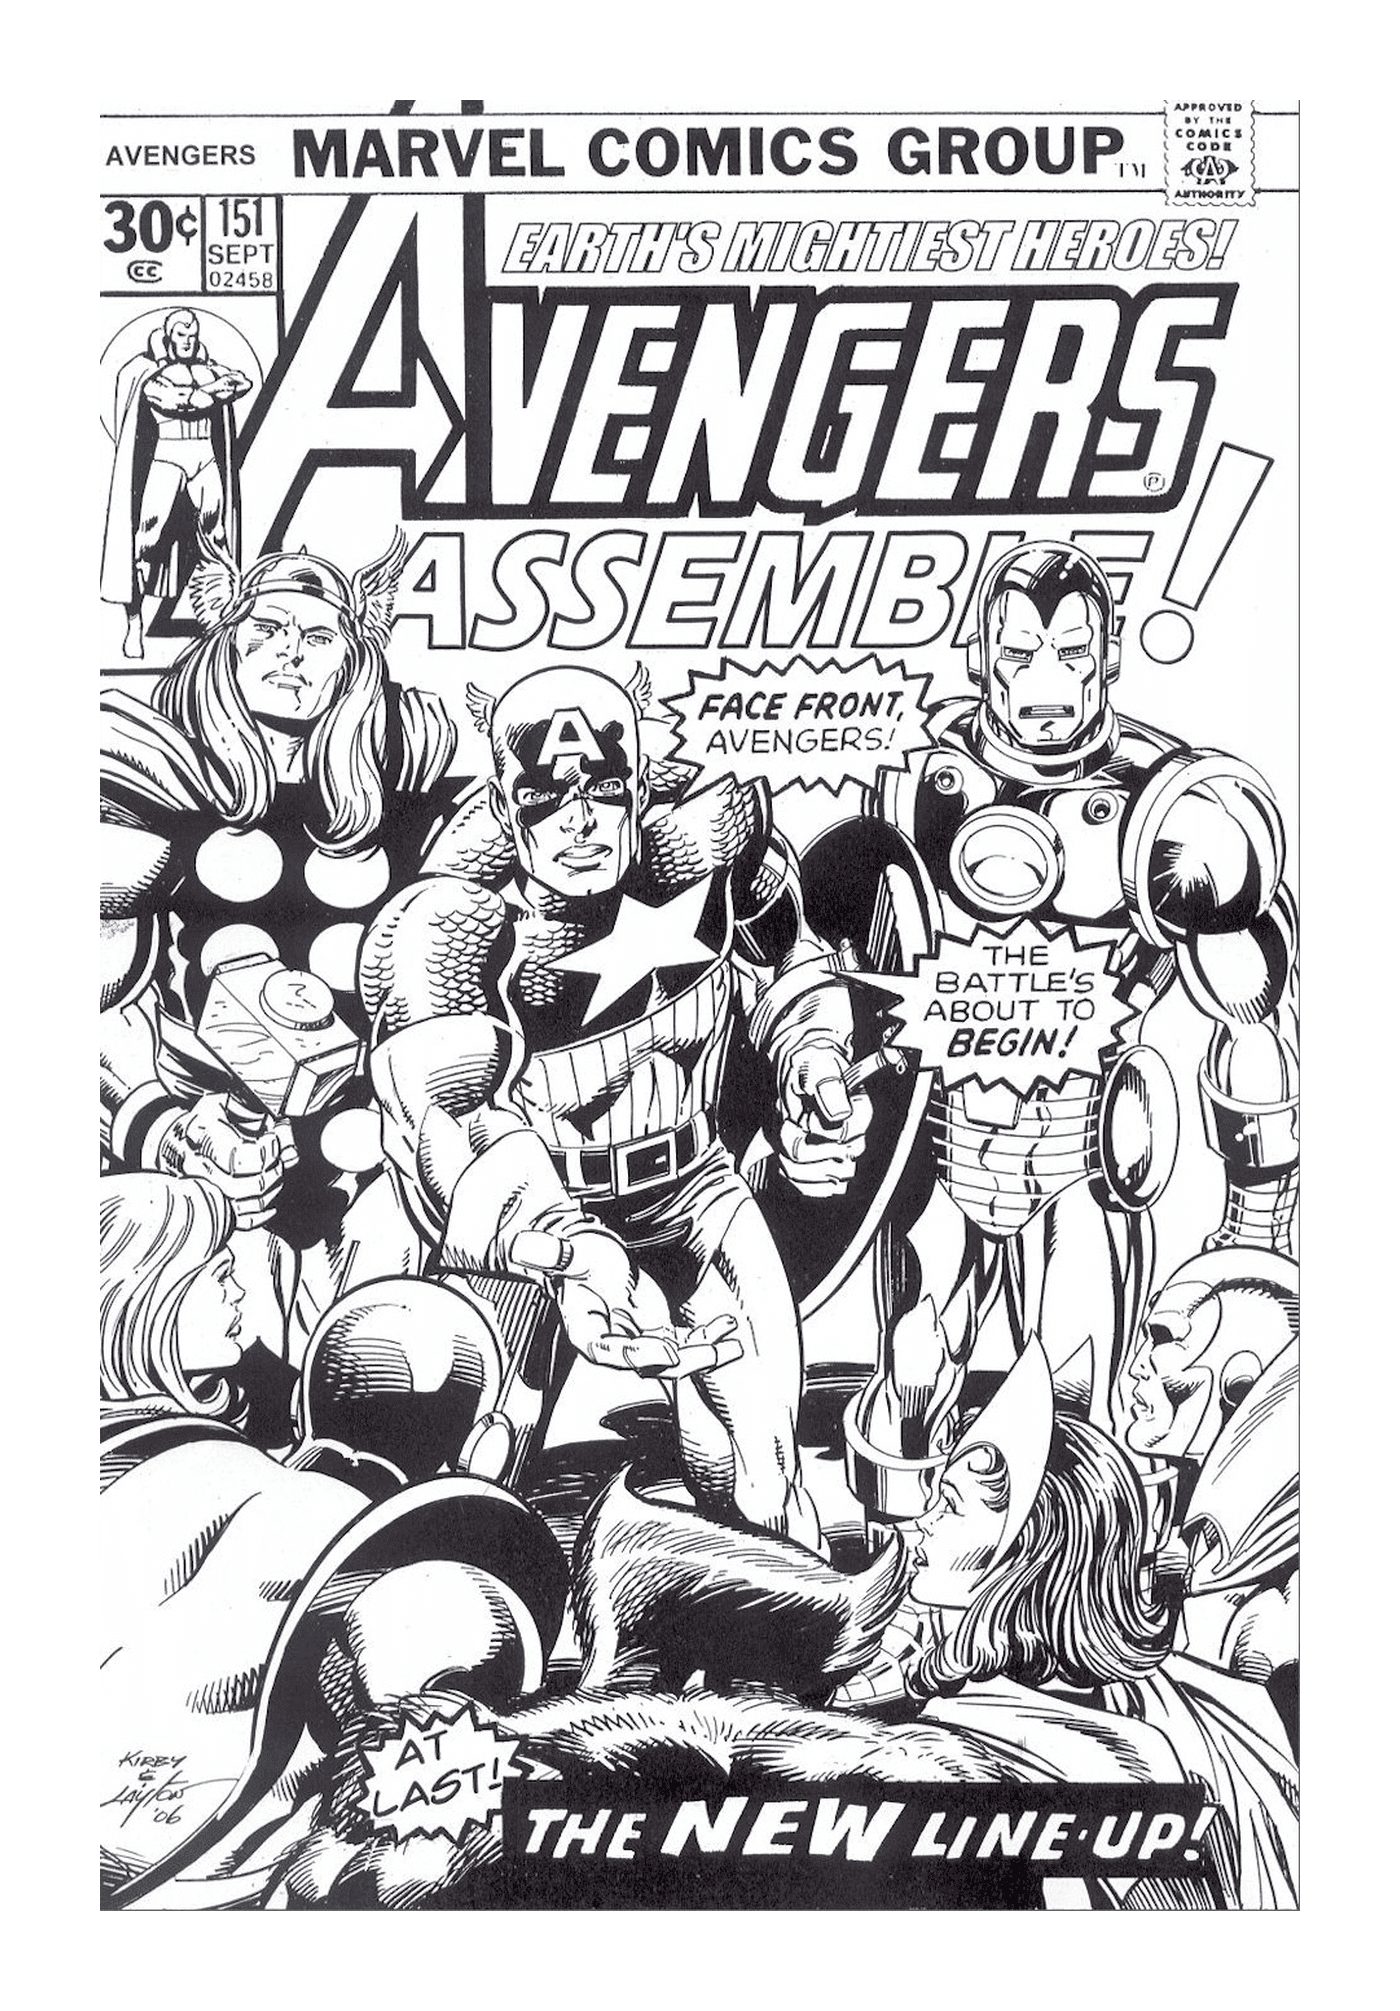  Обложка комиксов Marvel с группой супергероев 